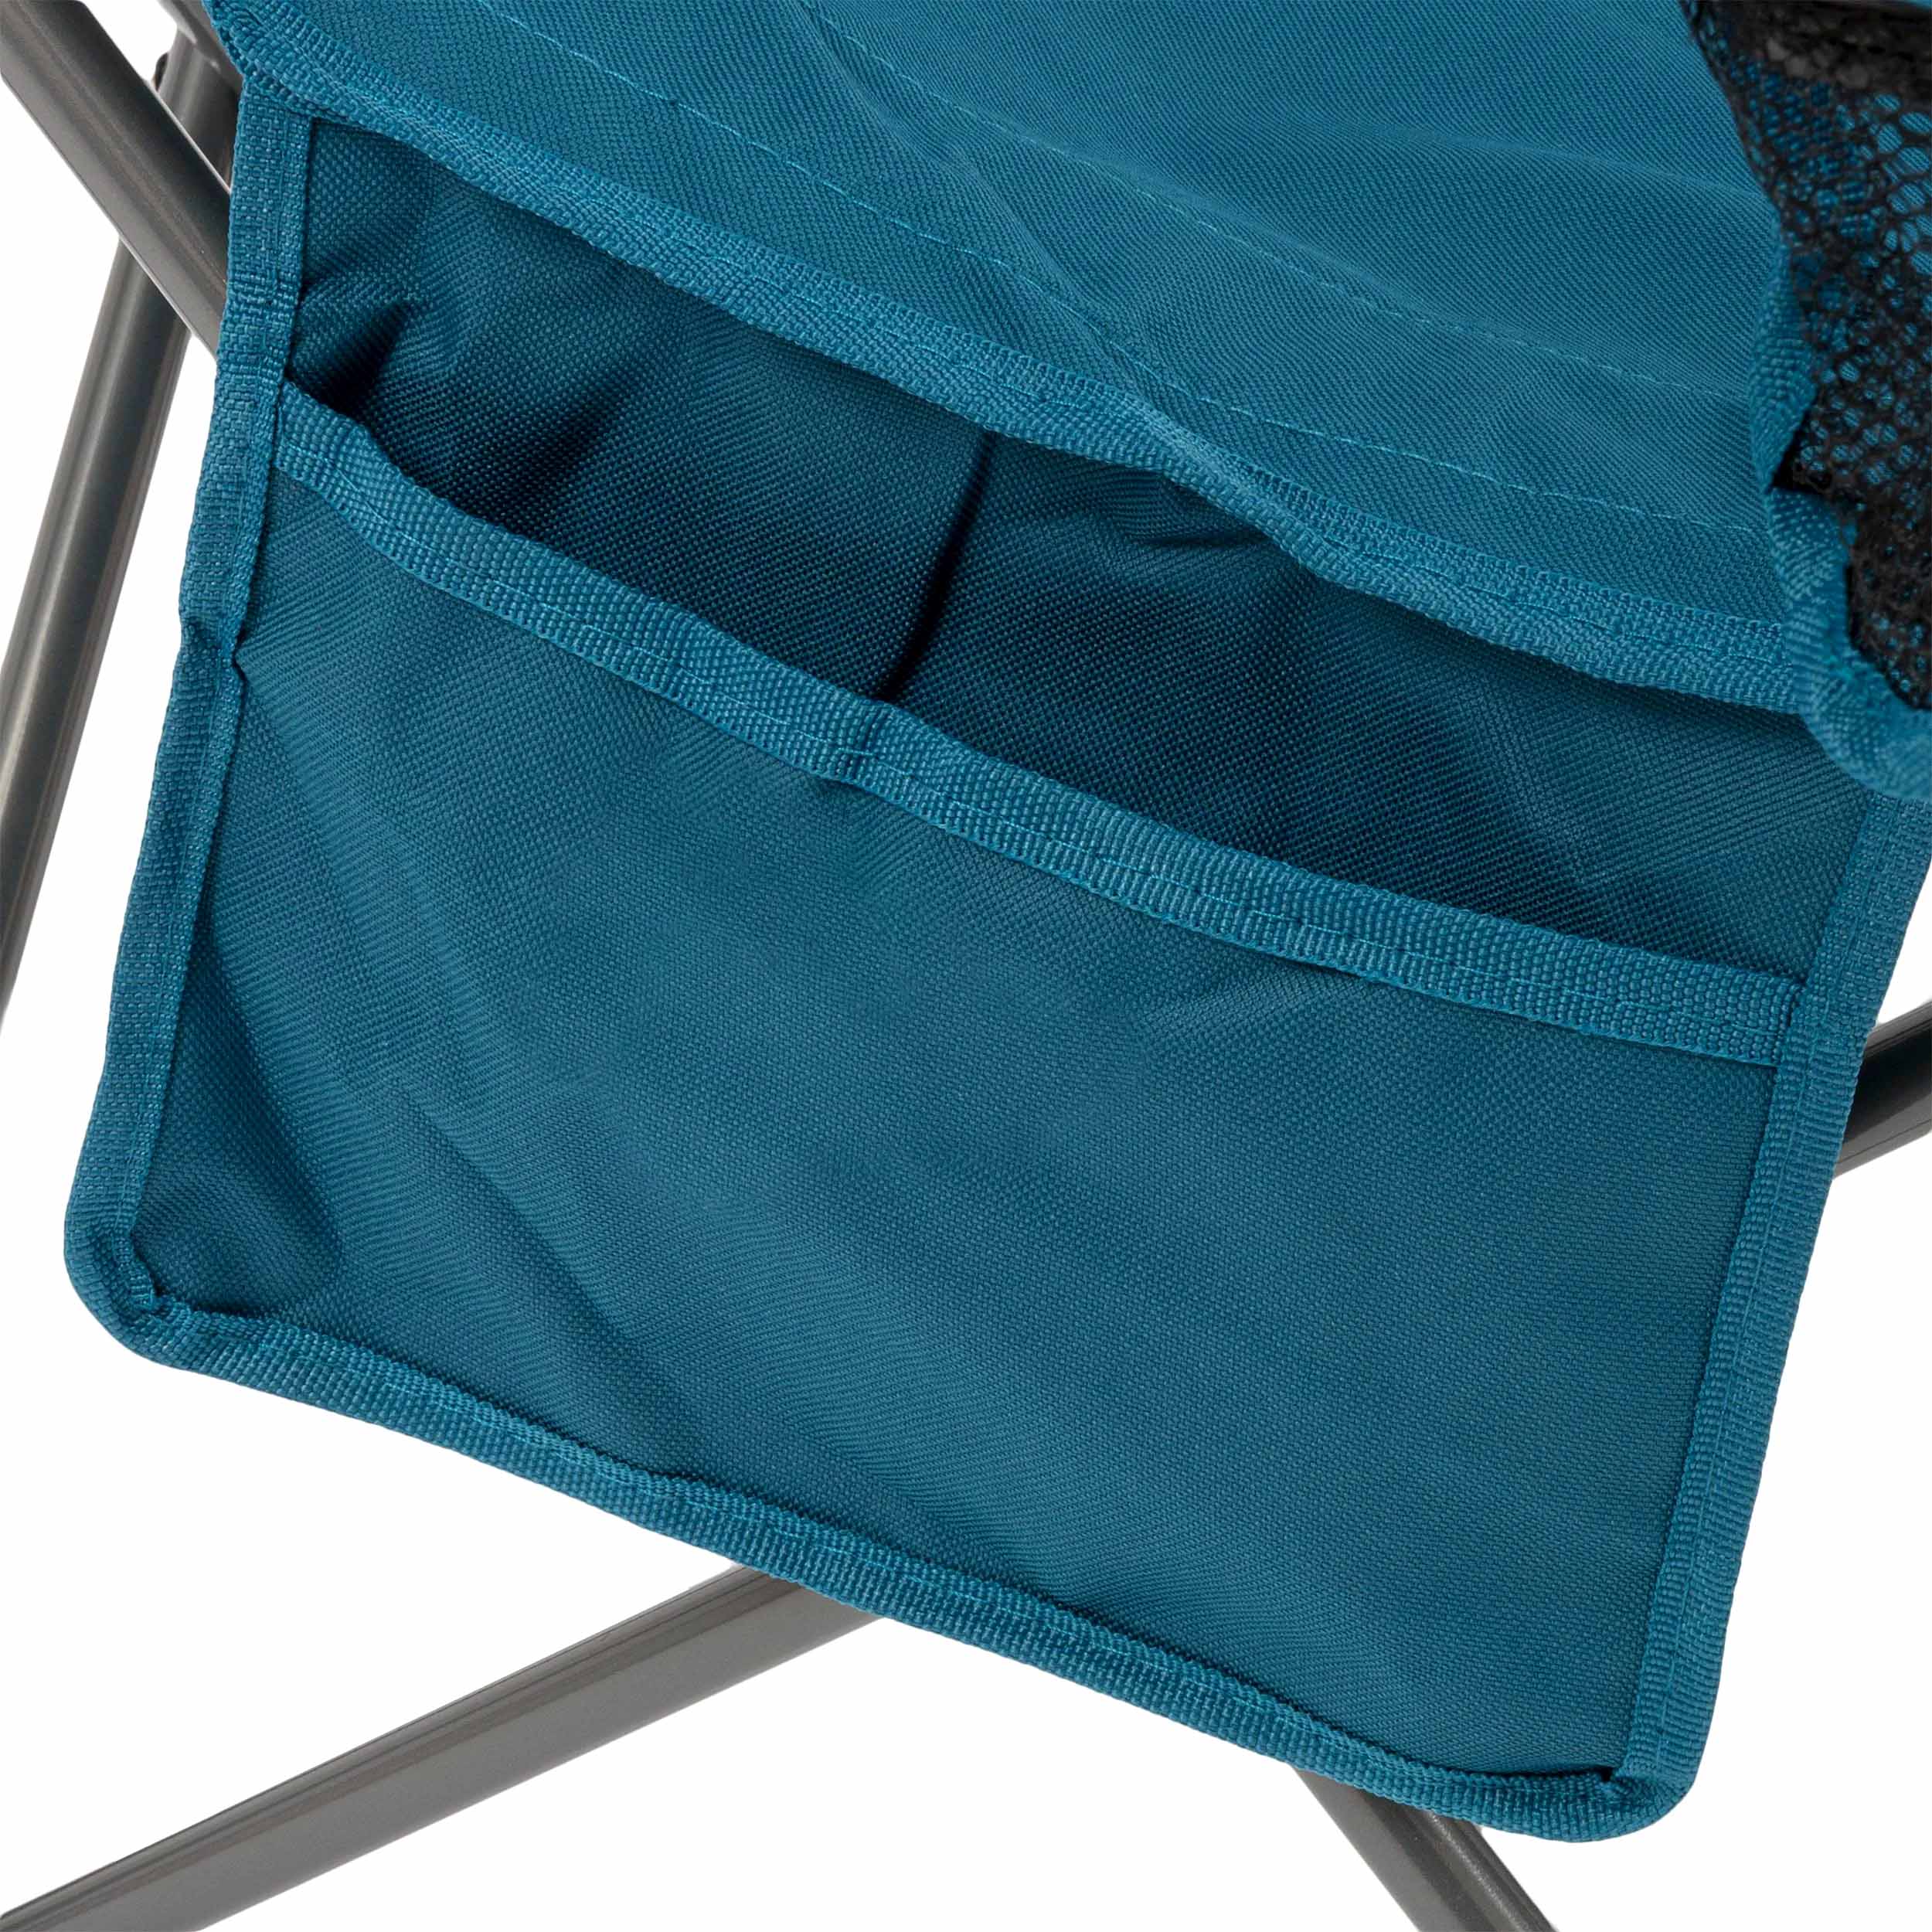 Krzesło turystyczne Highlander Outdoor Duart - Marine Blue